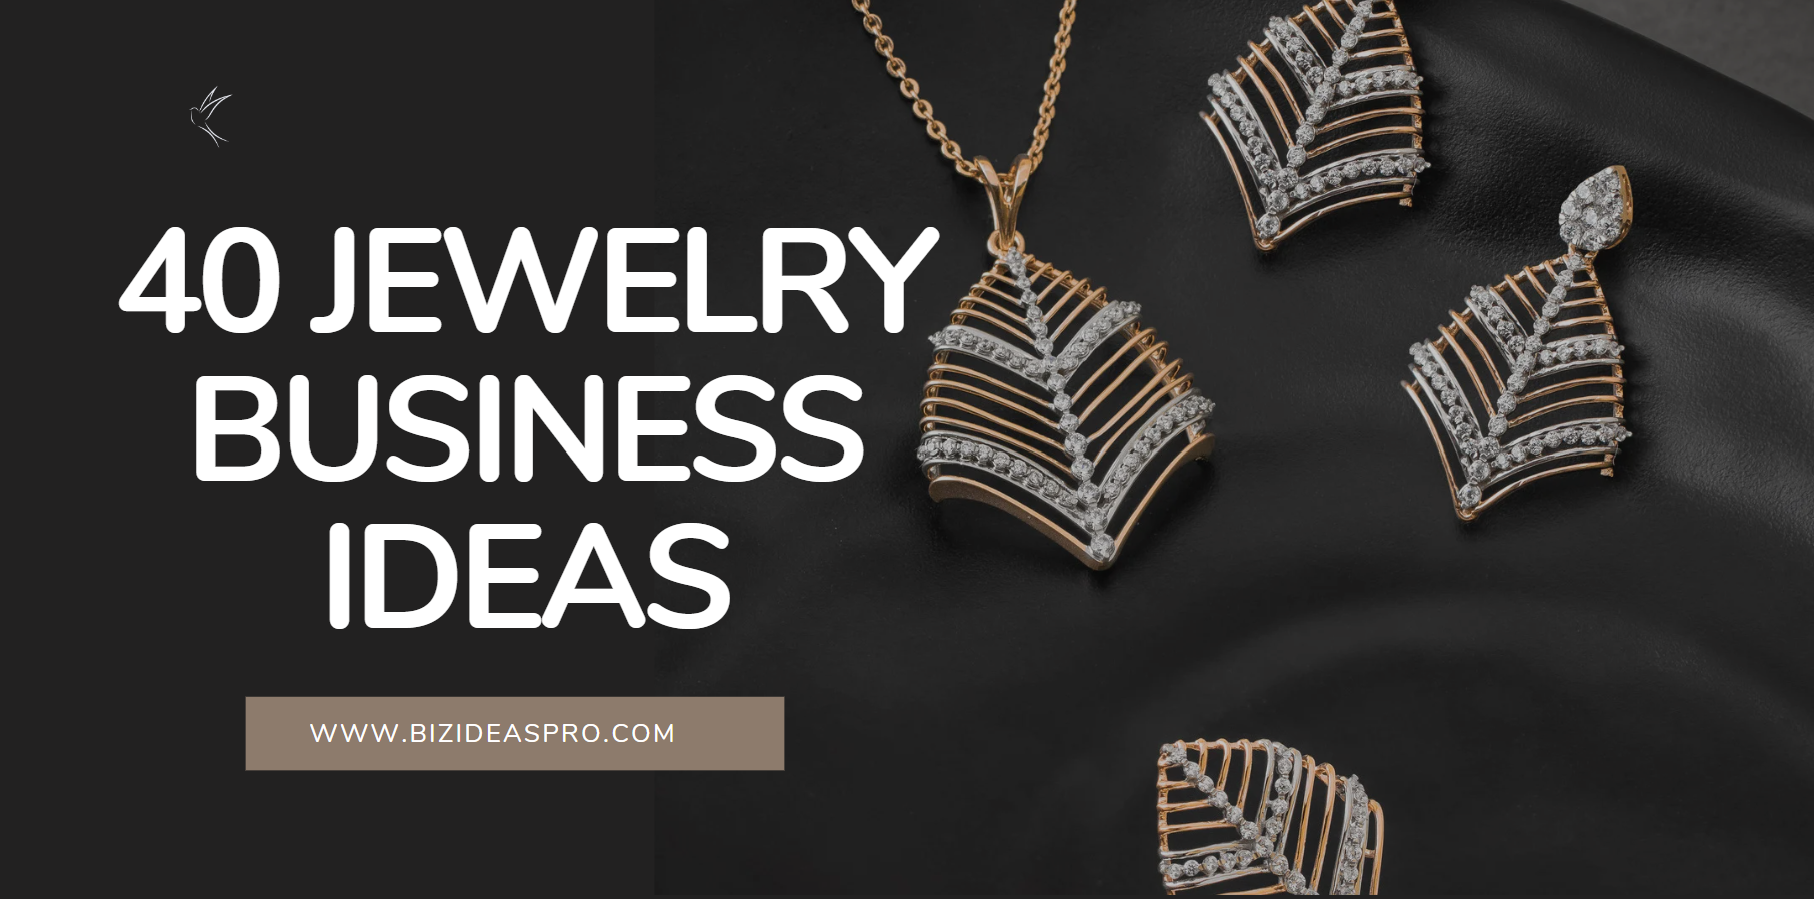 jewelry business ideas by bizideaspro.com